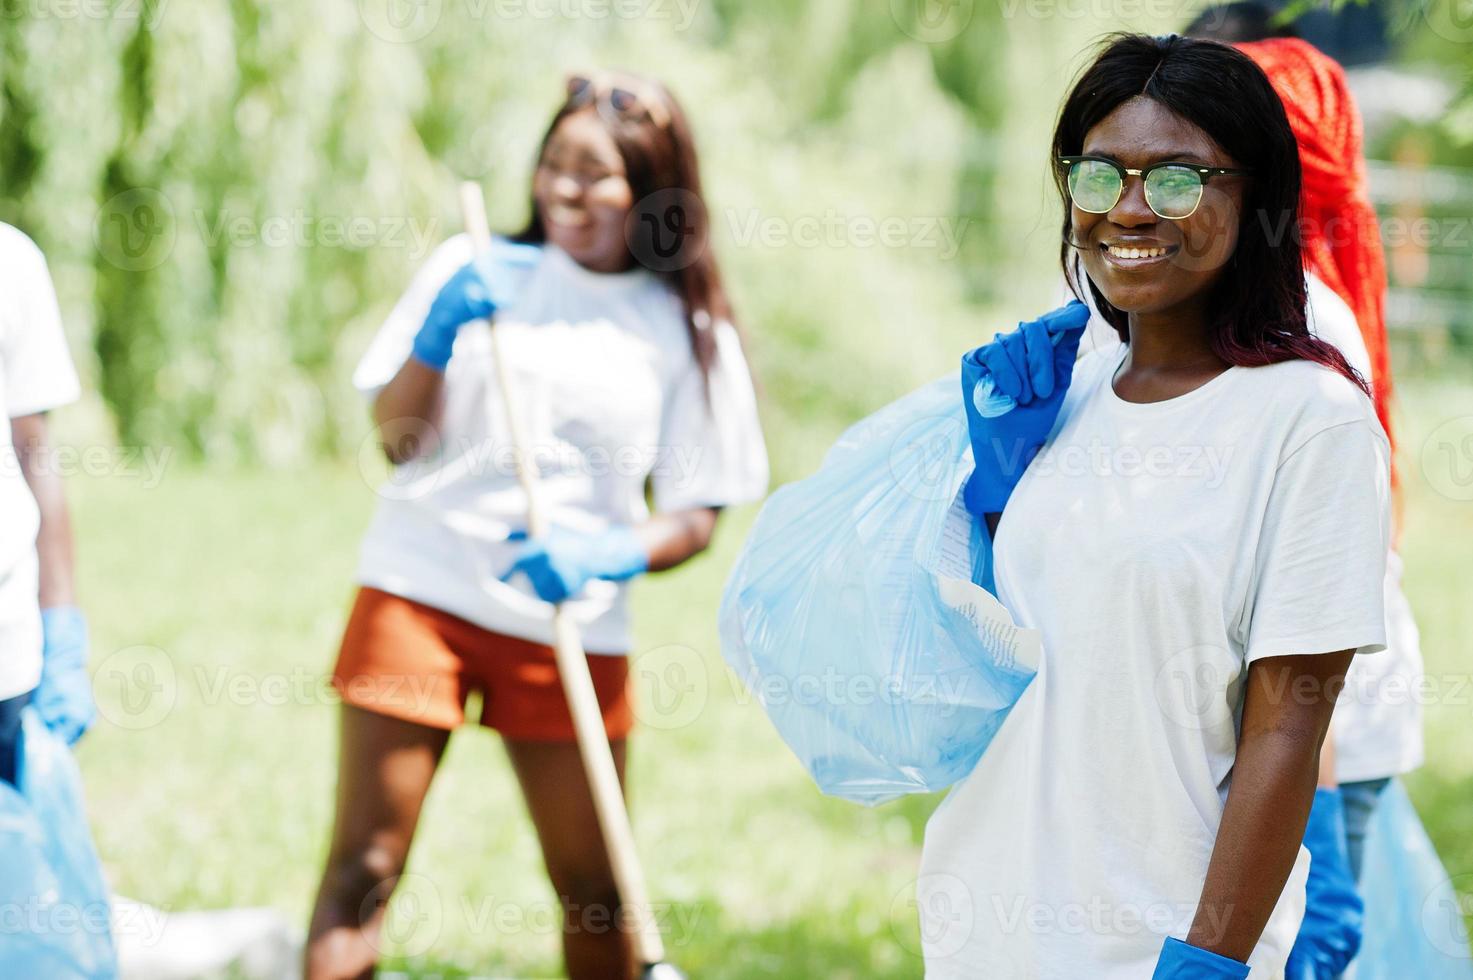 gruppo di volontari africani felici con l'area di pulizia dei sacchi della spazzatura nel parco. concetto di volontariato, carità, persone ed ecologia in africa. foto